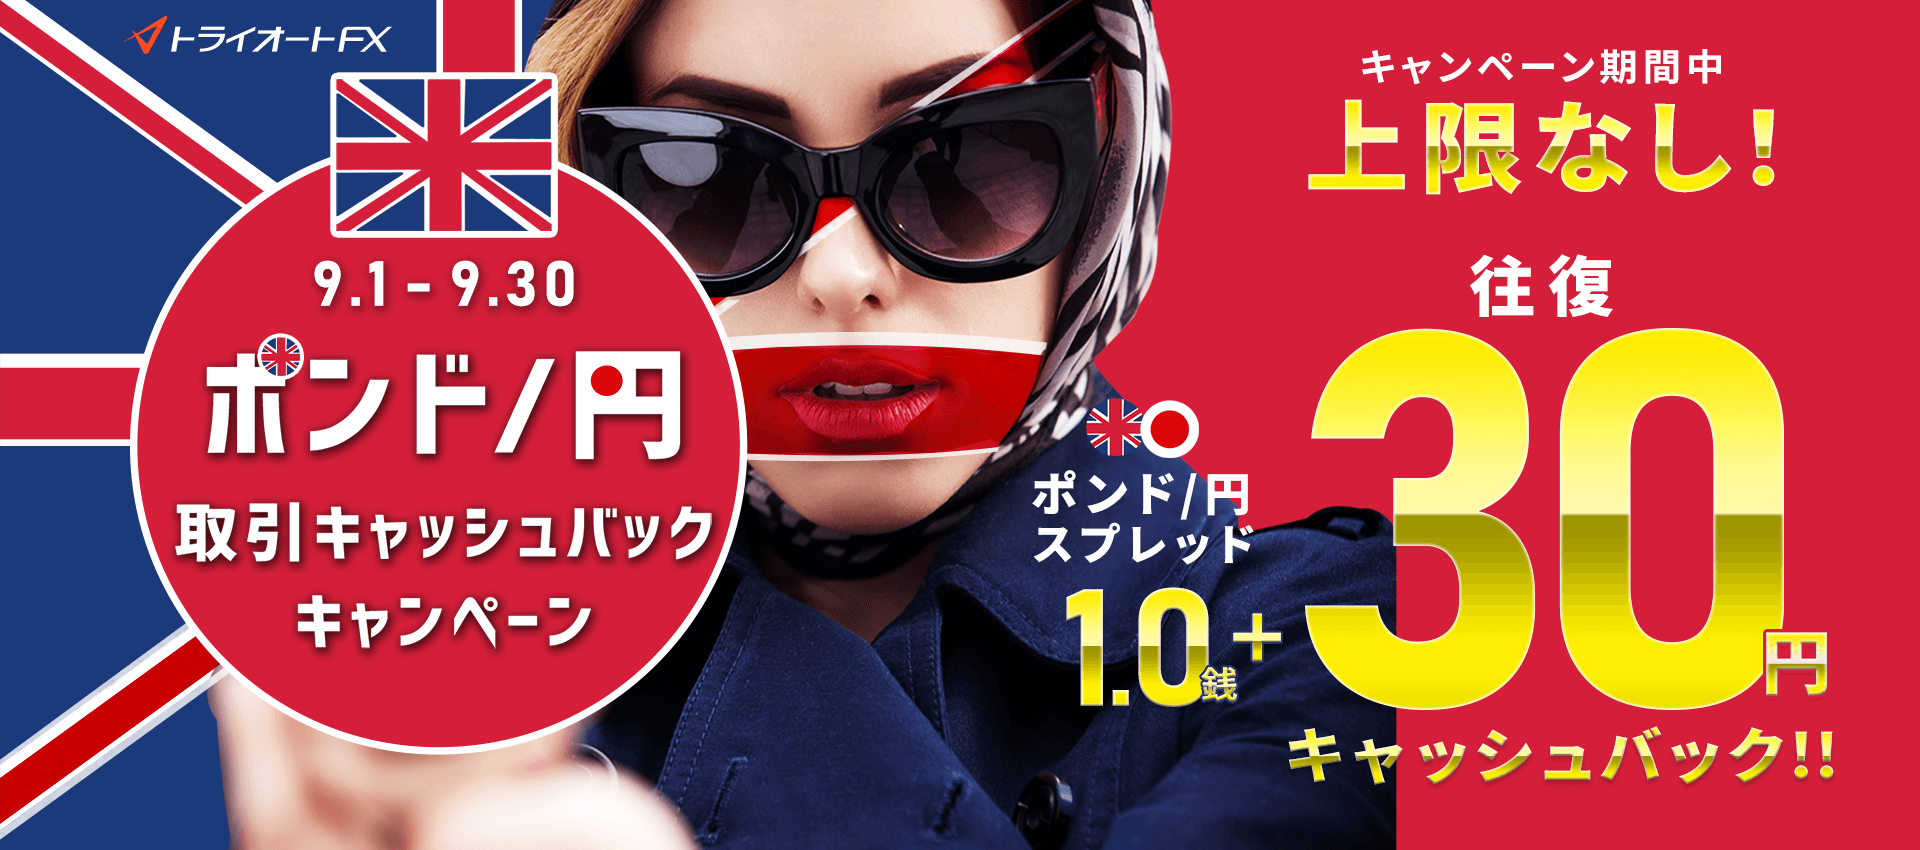 トライオートFX ポンド/円取引キャッシュバックキャンペーン